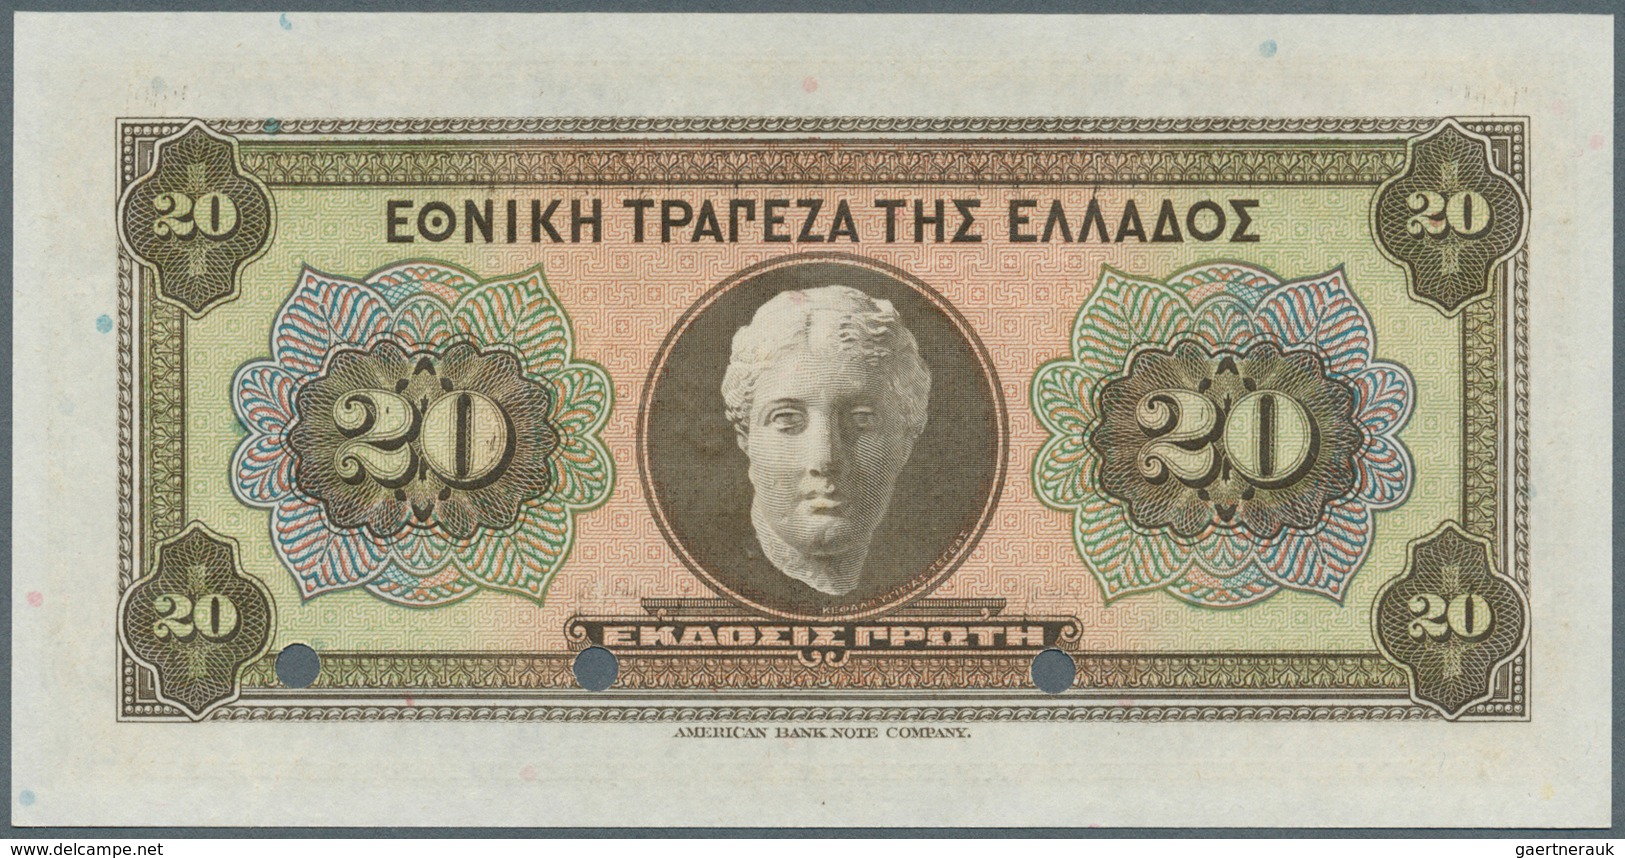 01629 Greece / Griechenland: 20 Drachmai ND(1928) Specimen P. 95s In Condition: UNC. - Grecia